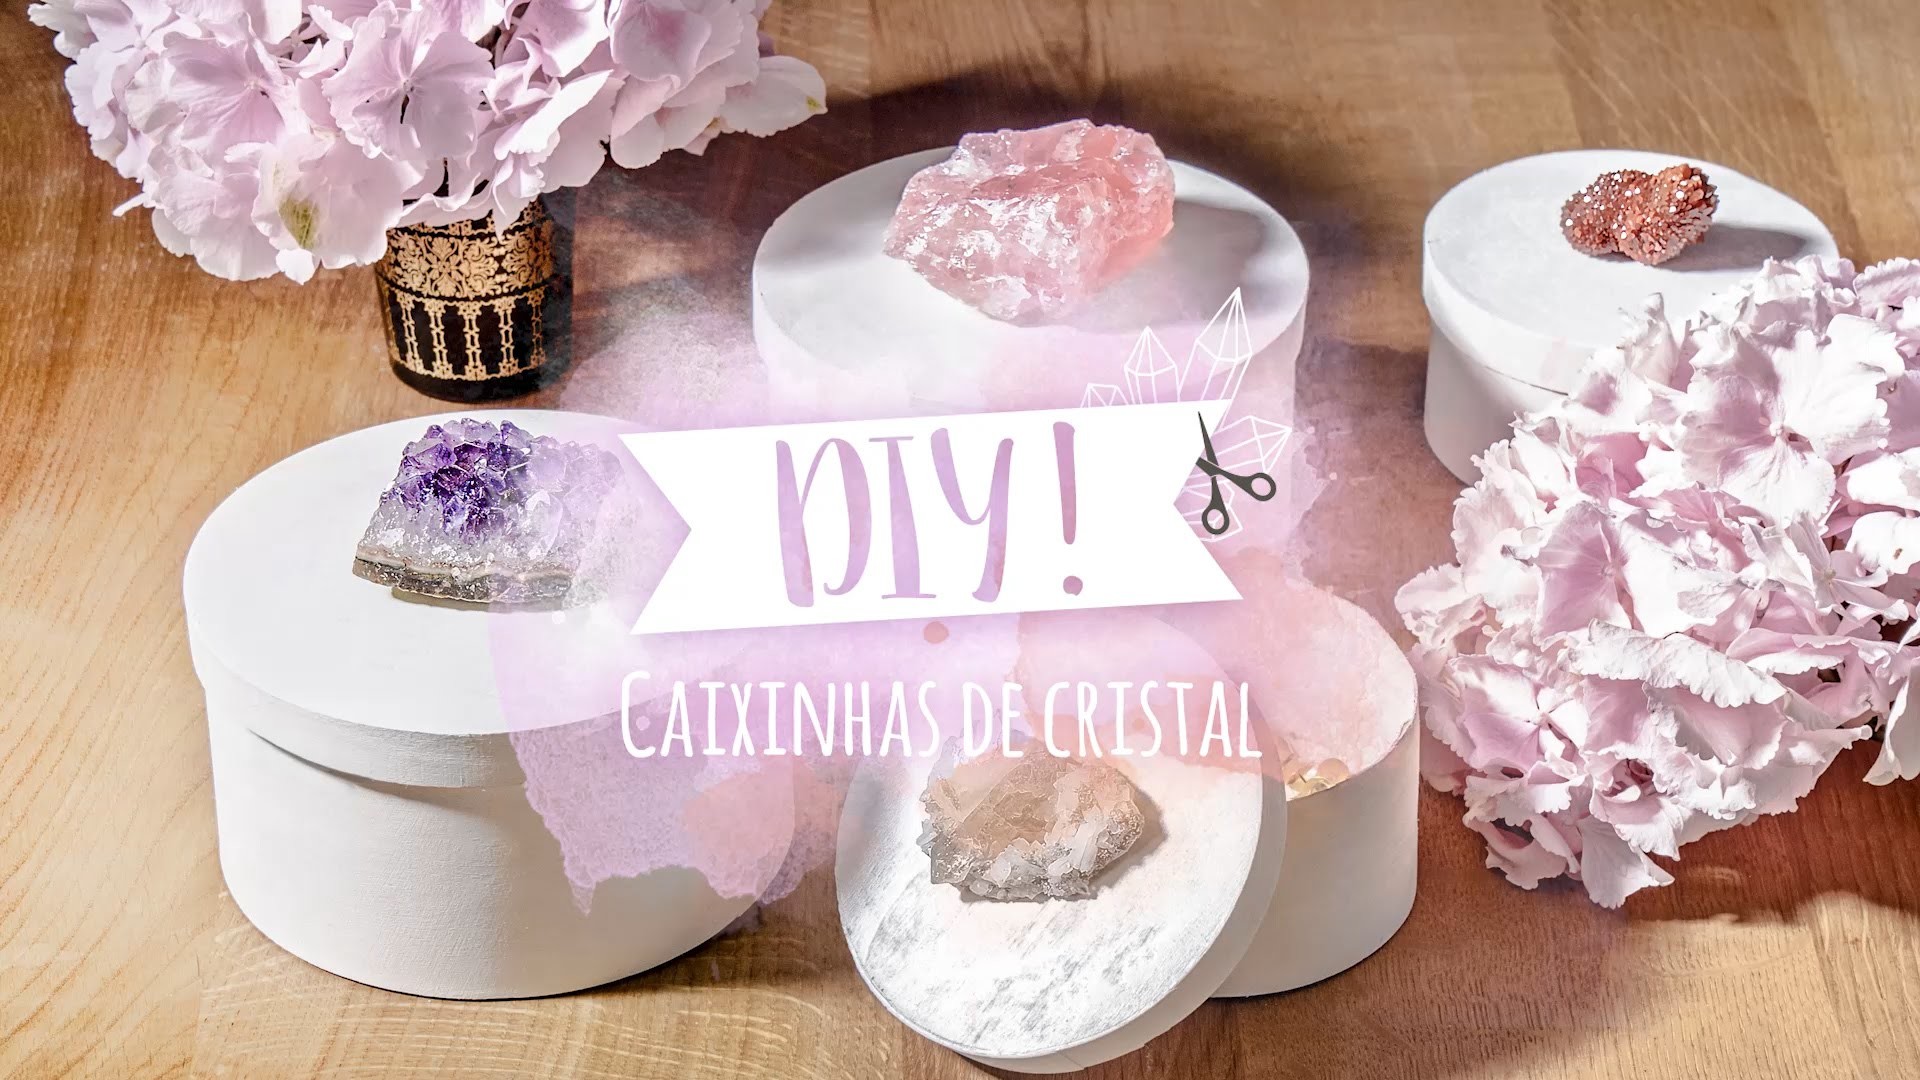 DIY: Como decorar caixinhas com cristais | WESTWING